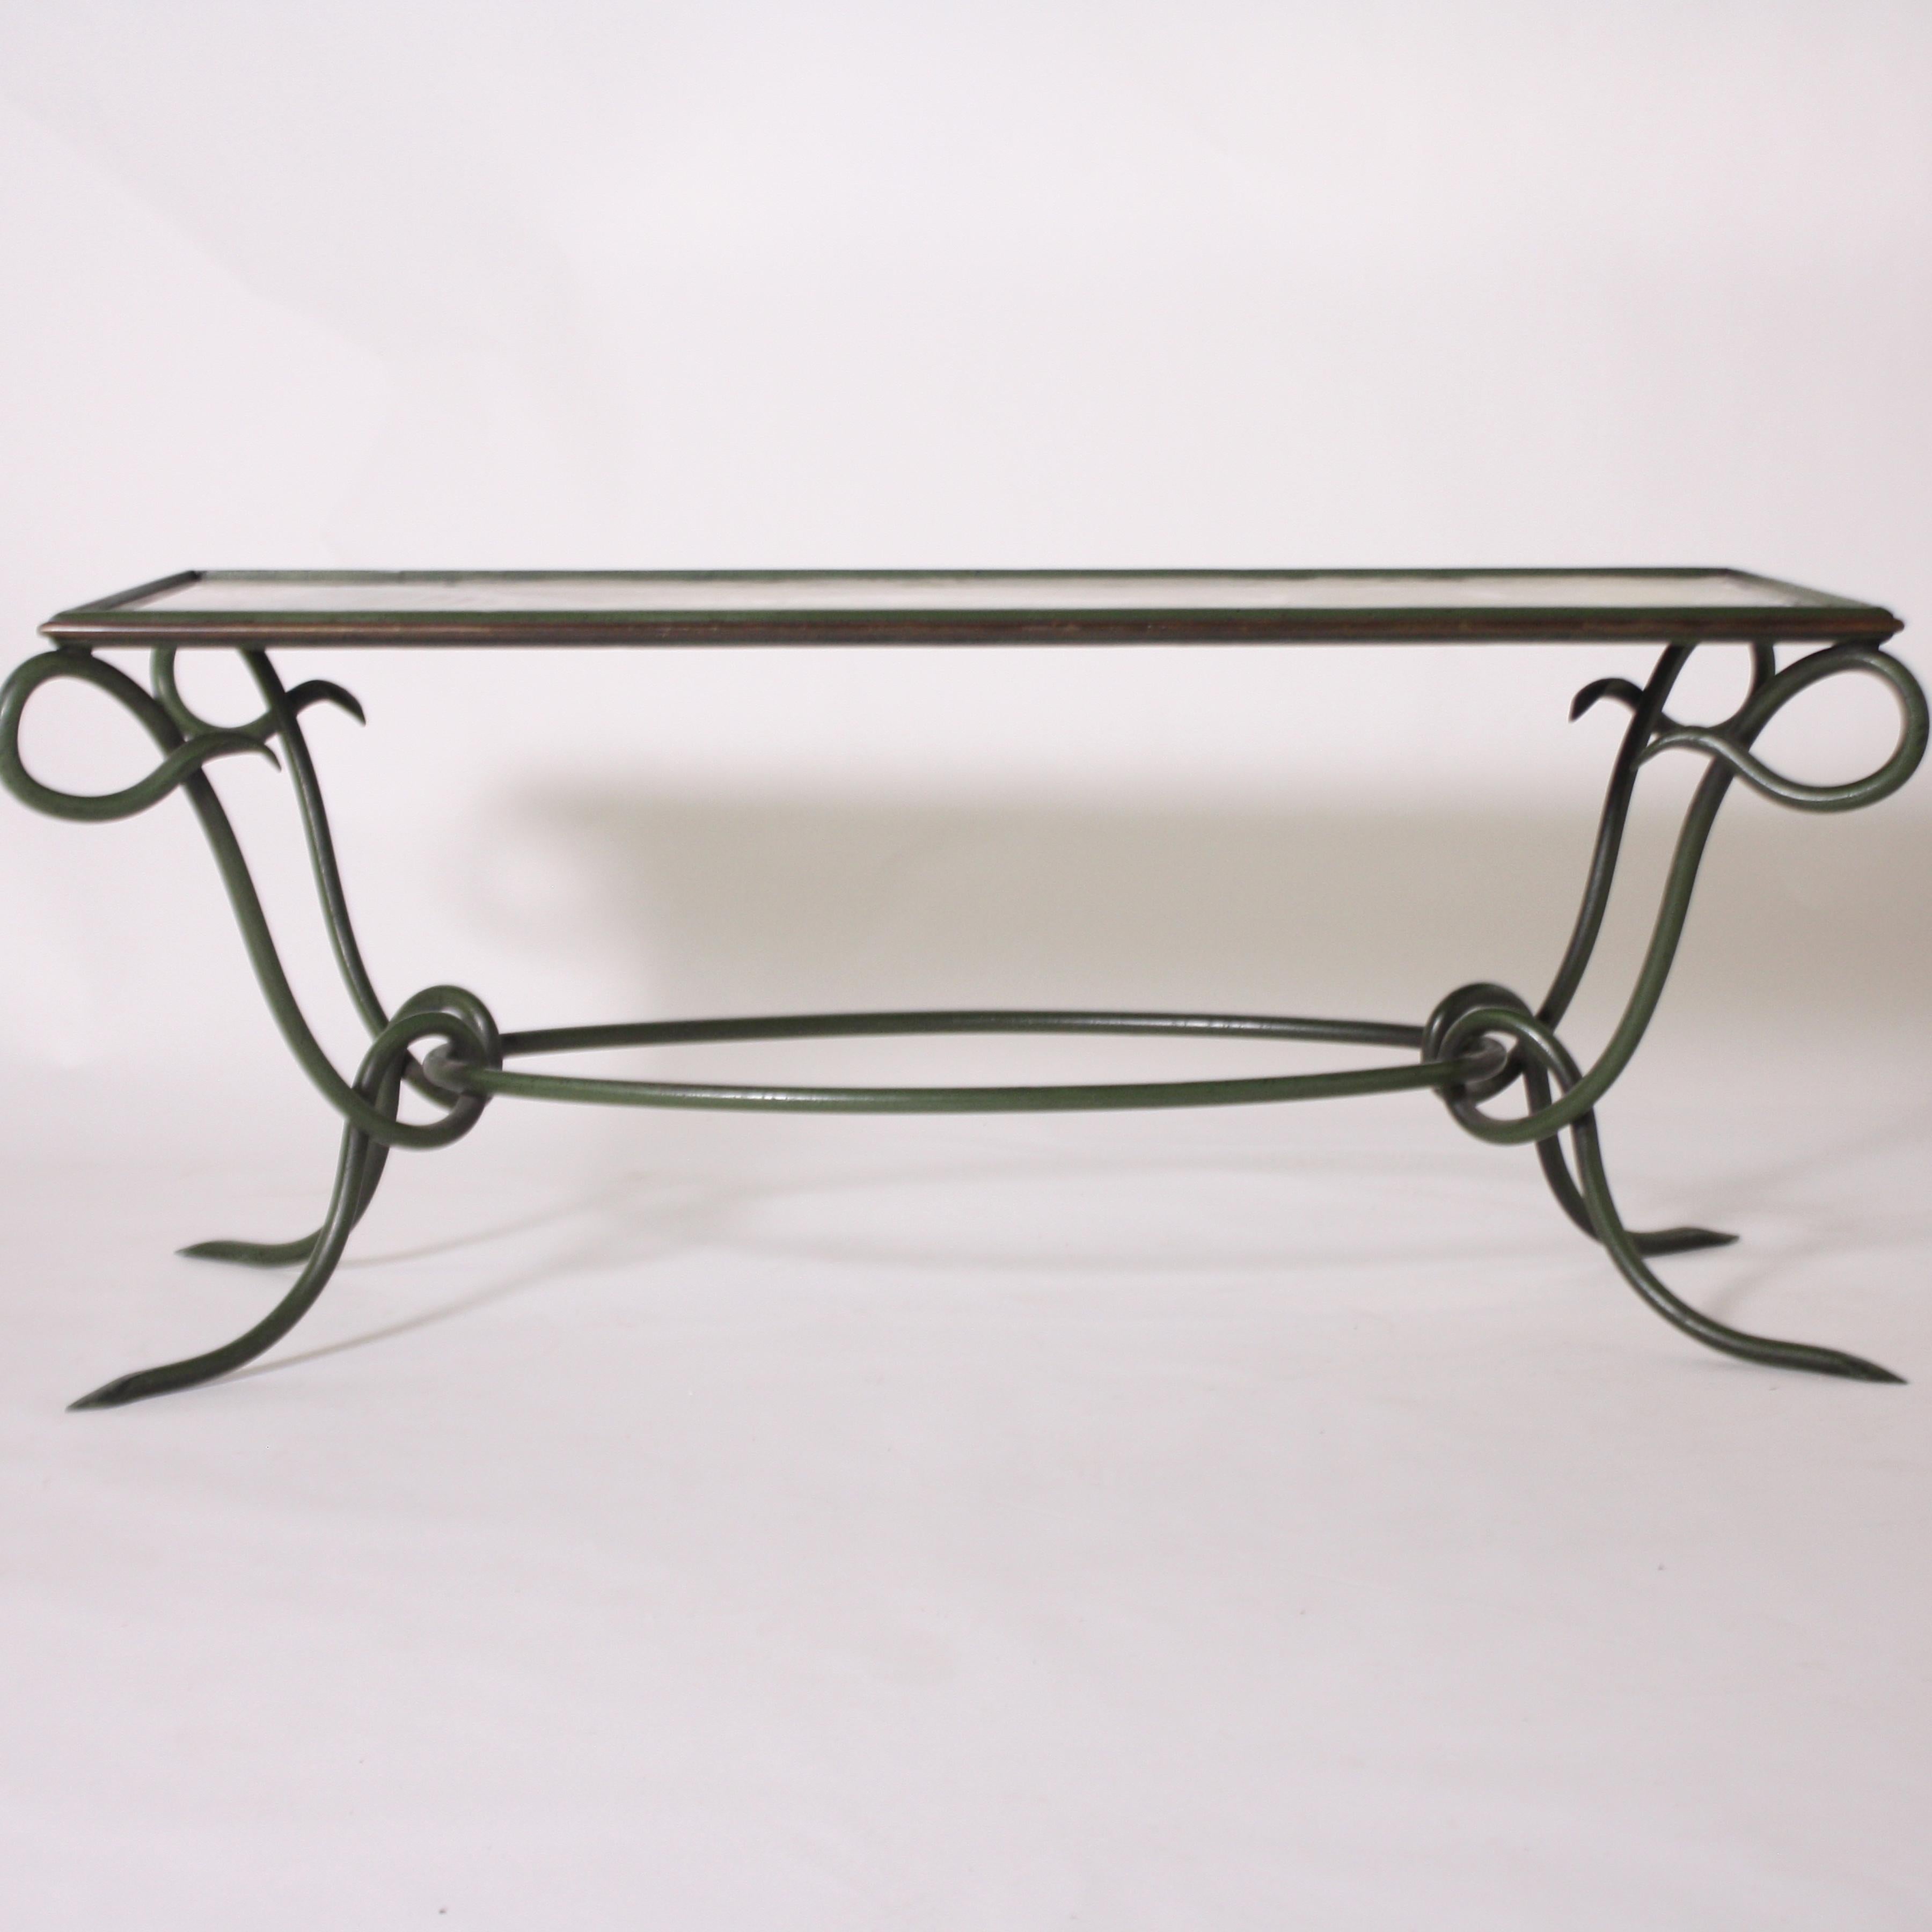 Rene Prou green metal coffee table, circa 1950.